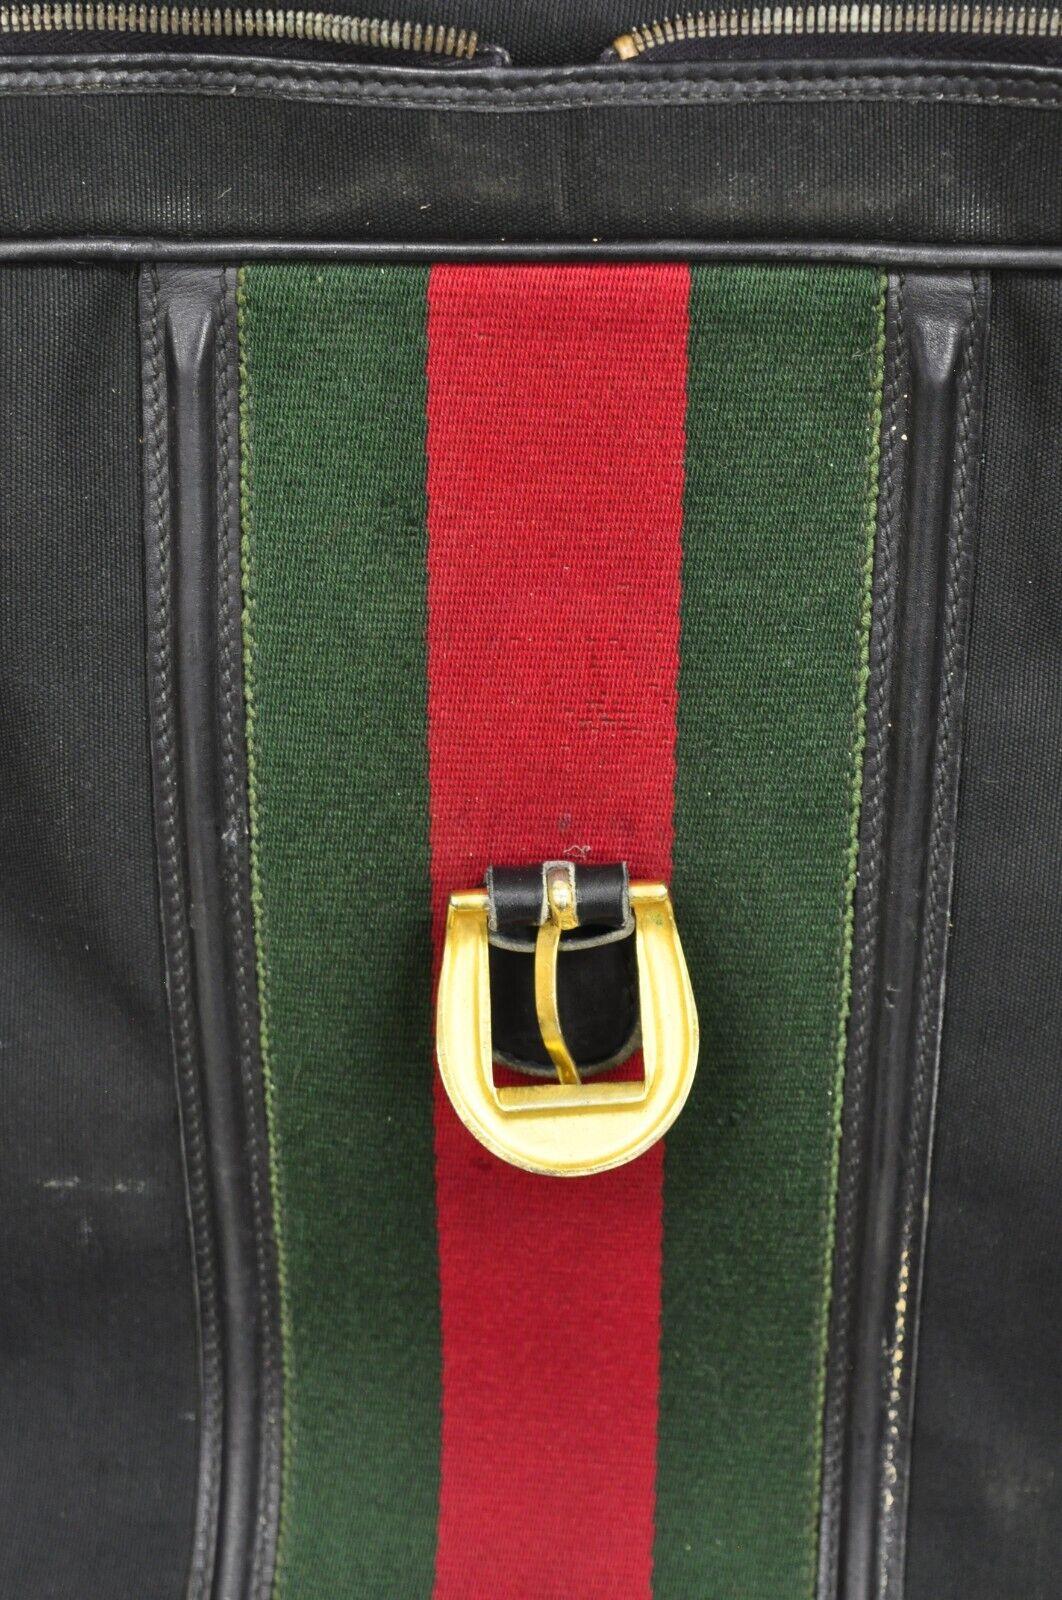 Vintage Gucci Black Canvas & Leather Suitcase Luggage Travel Bag Set - 2 Pcs For Sale 9